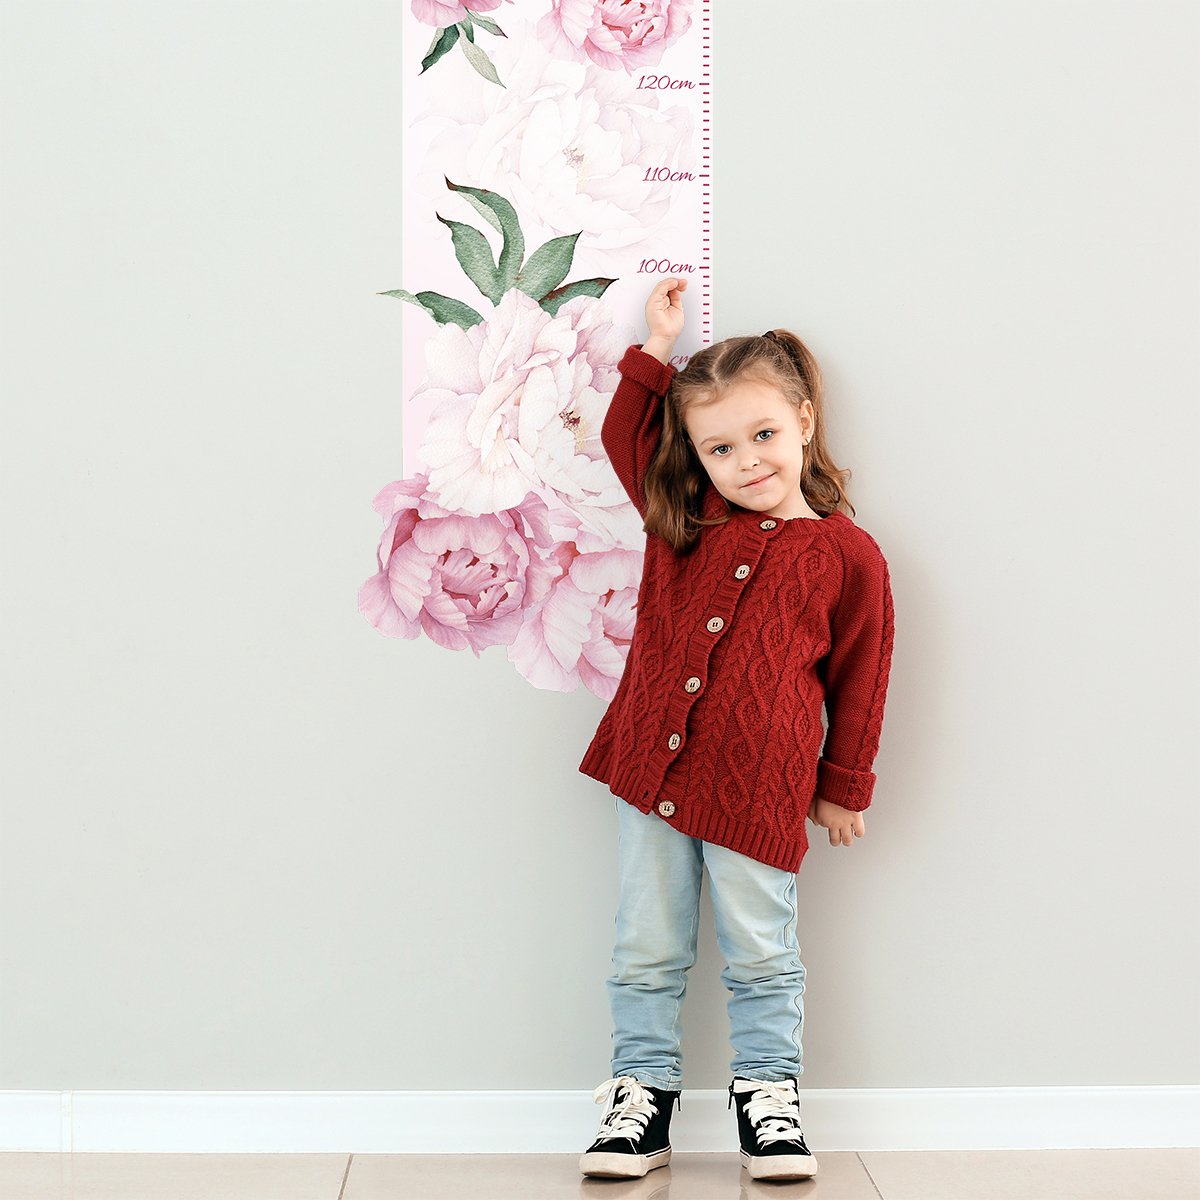 Naklejka na ścianę dla dzieci miarka wzrostu kwiaty#kolor_rozowy-mix